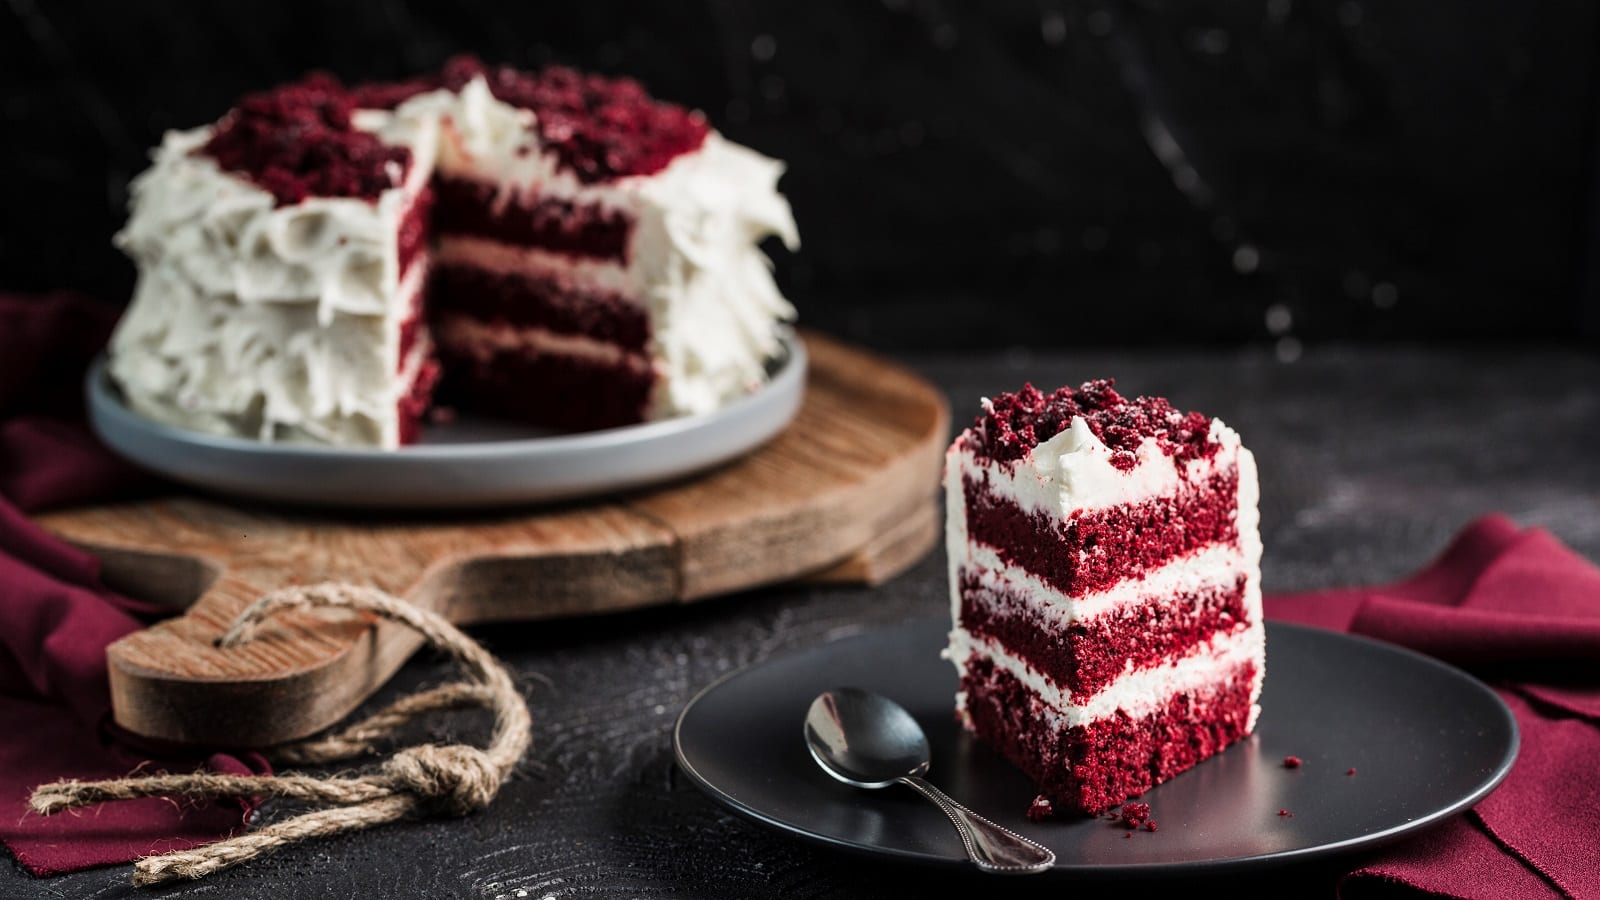 Ein Stück Red Velvet Cake ist auf einem schwarzen Teller angerichtet, zusammen mit einem Löffel. Im Hintergrund sieht man den ganzen Kuchen, dem ein Stück fehlt, auf einem Holzbrett stehen.